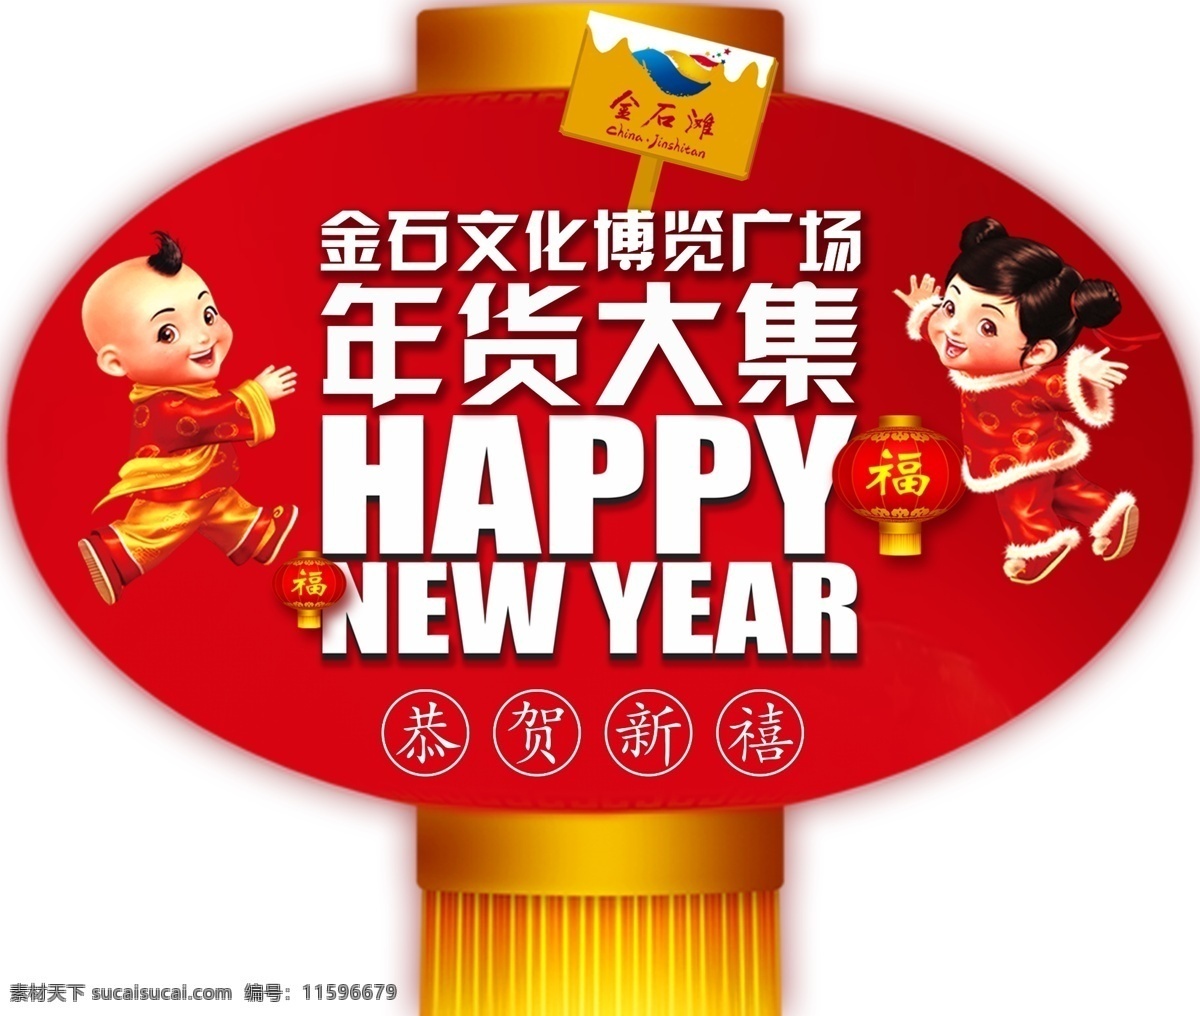 新年 灯笼 挂件 happy new year 儿童 红色 卡通 原创设计 原创节日素材